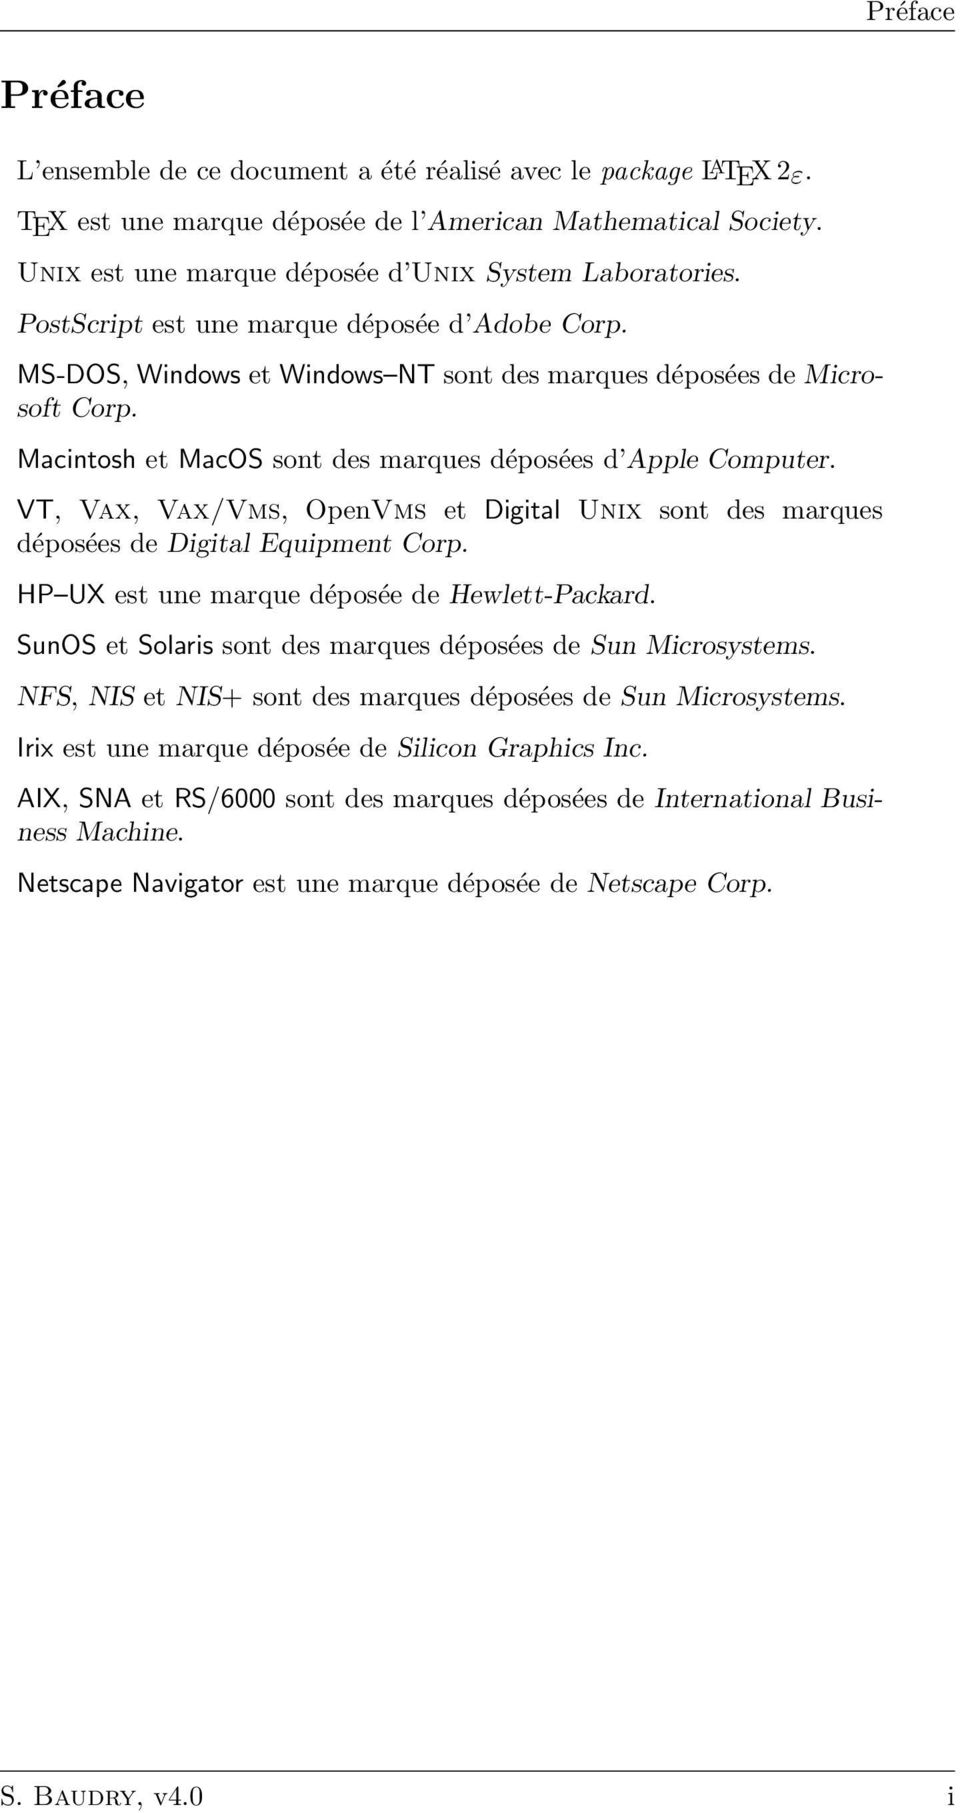 Macintosh et MacOS sont des marques déposées d Apple Computer. VT, Vax, Vax/Vms, OpenVms et Digital Unix sont des marques déposées de Digital Equipment Corp.